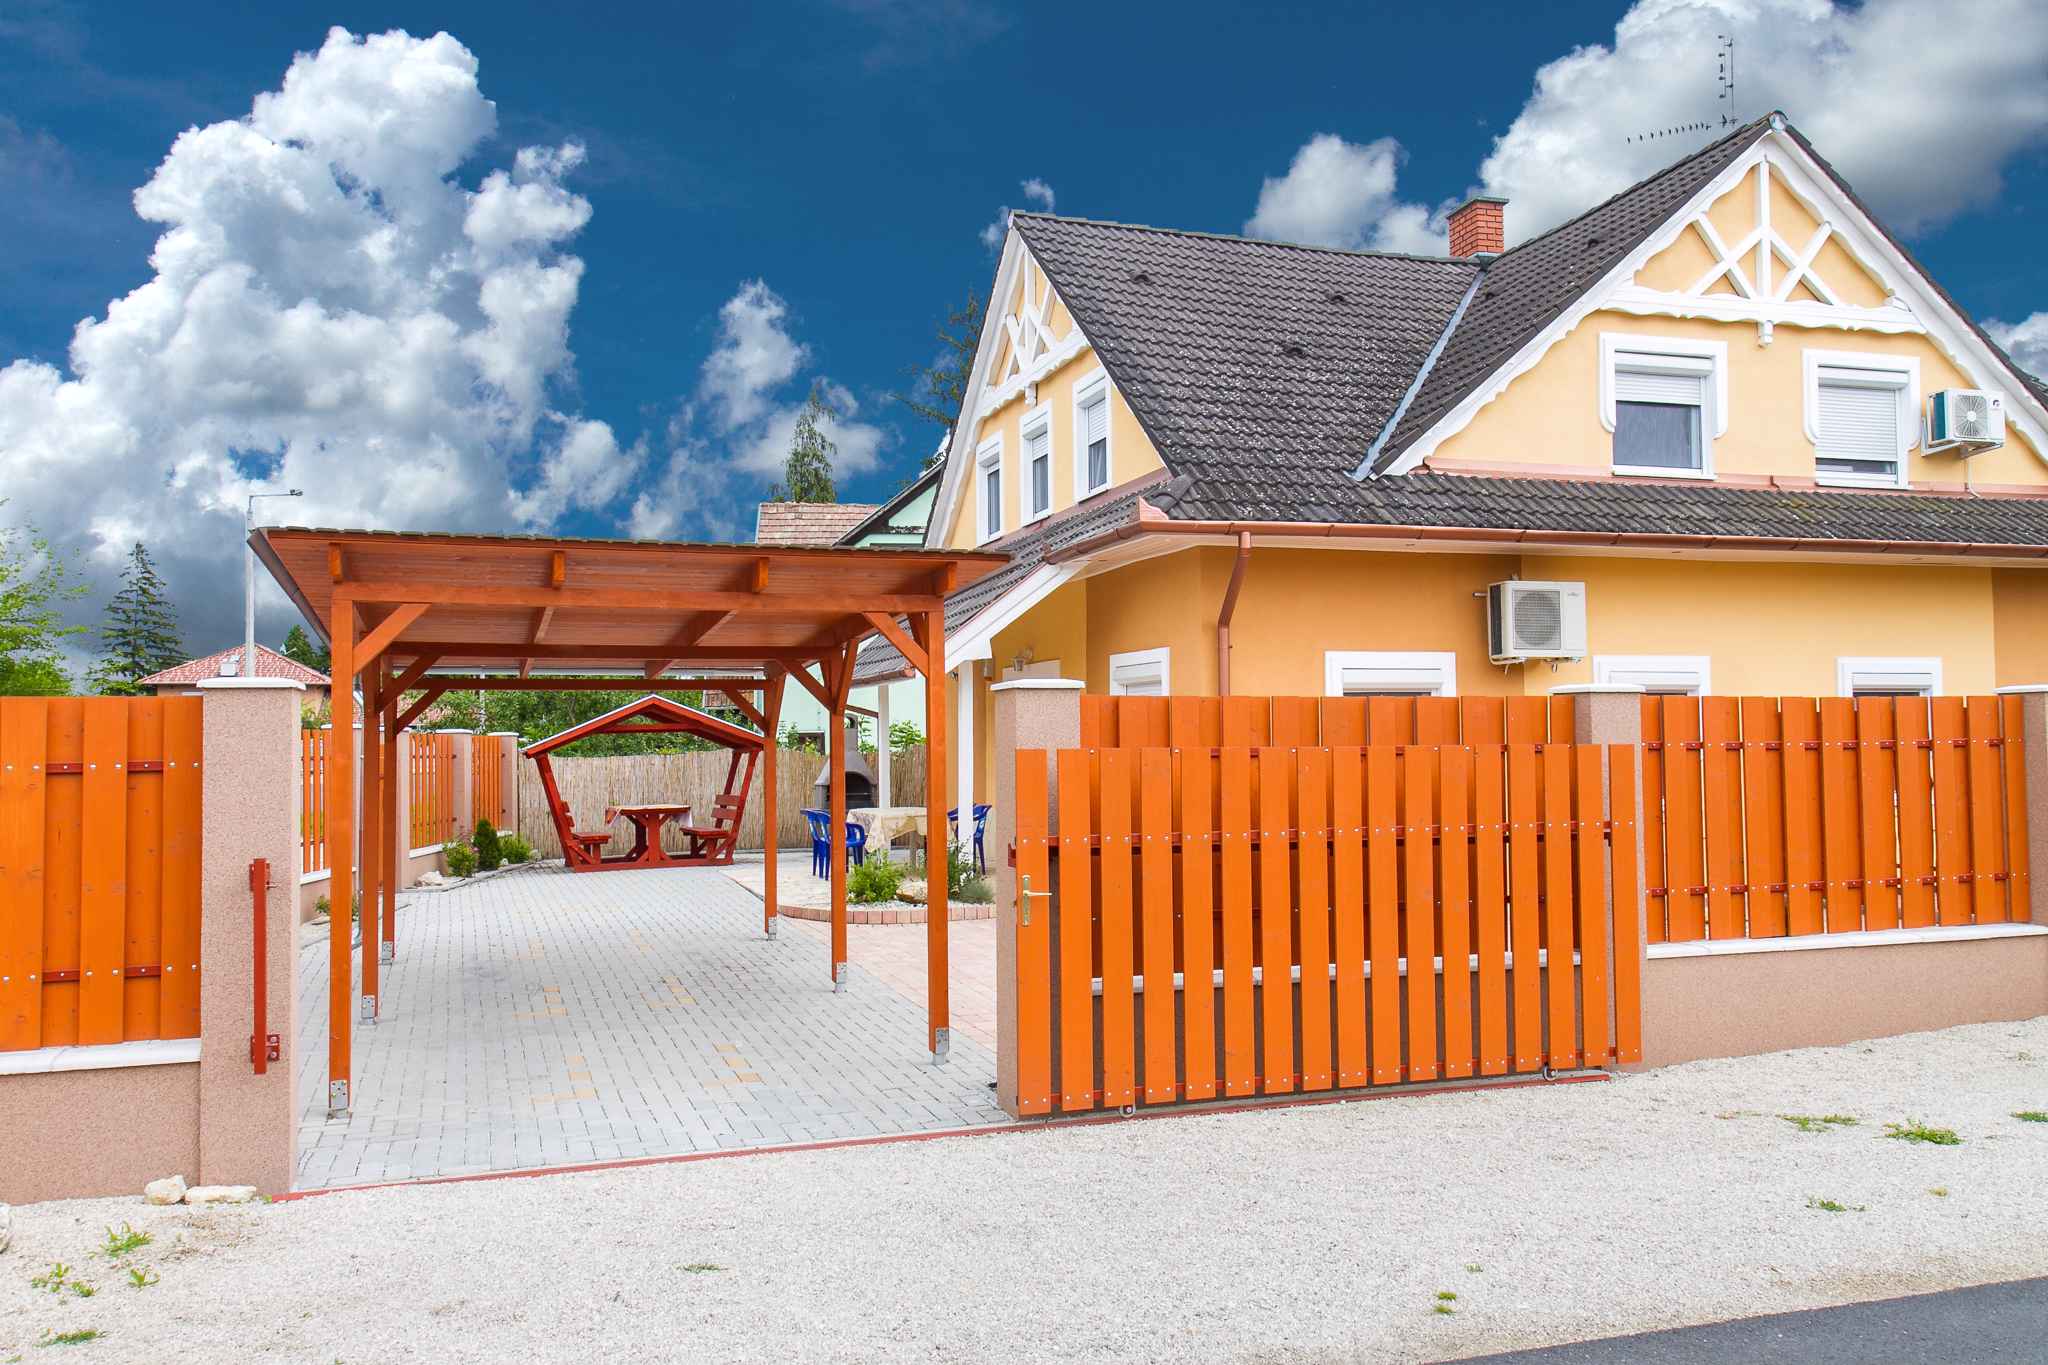 Ferienhaus in der Nähe einer Angelmöglic  in Ungarn